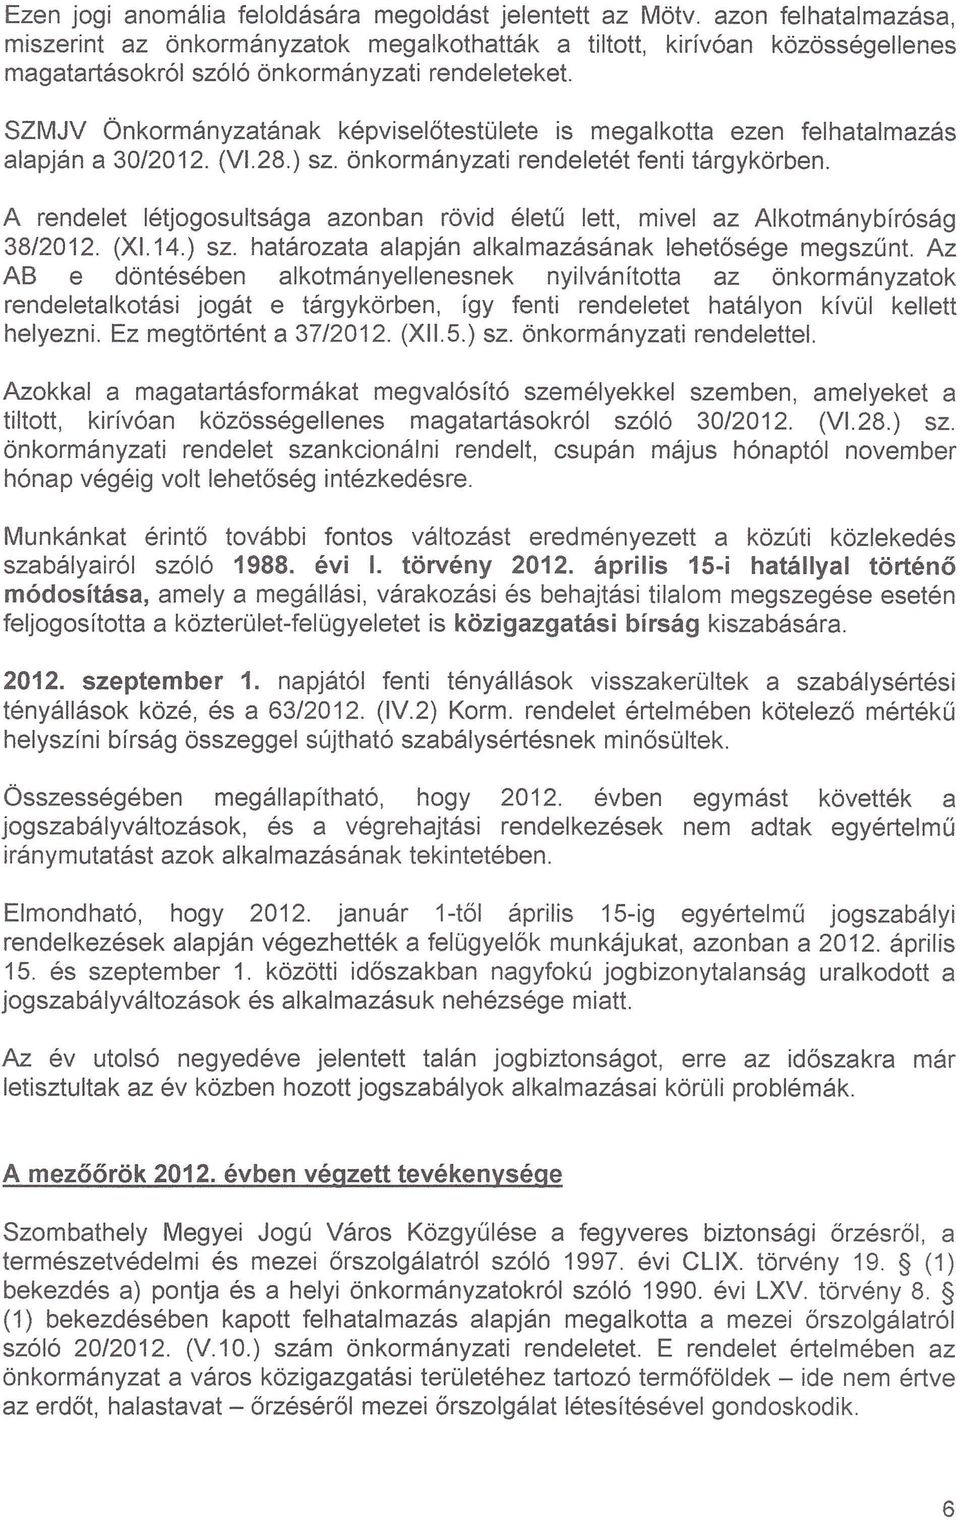 SZMJV Önkormányzatának képviselőtestülete is megalkotta ezen felhatalmazás alapján a 30/2012. (VI.28.) sz. önkormányzati rendeletét fenti tárgykörben.